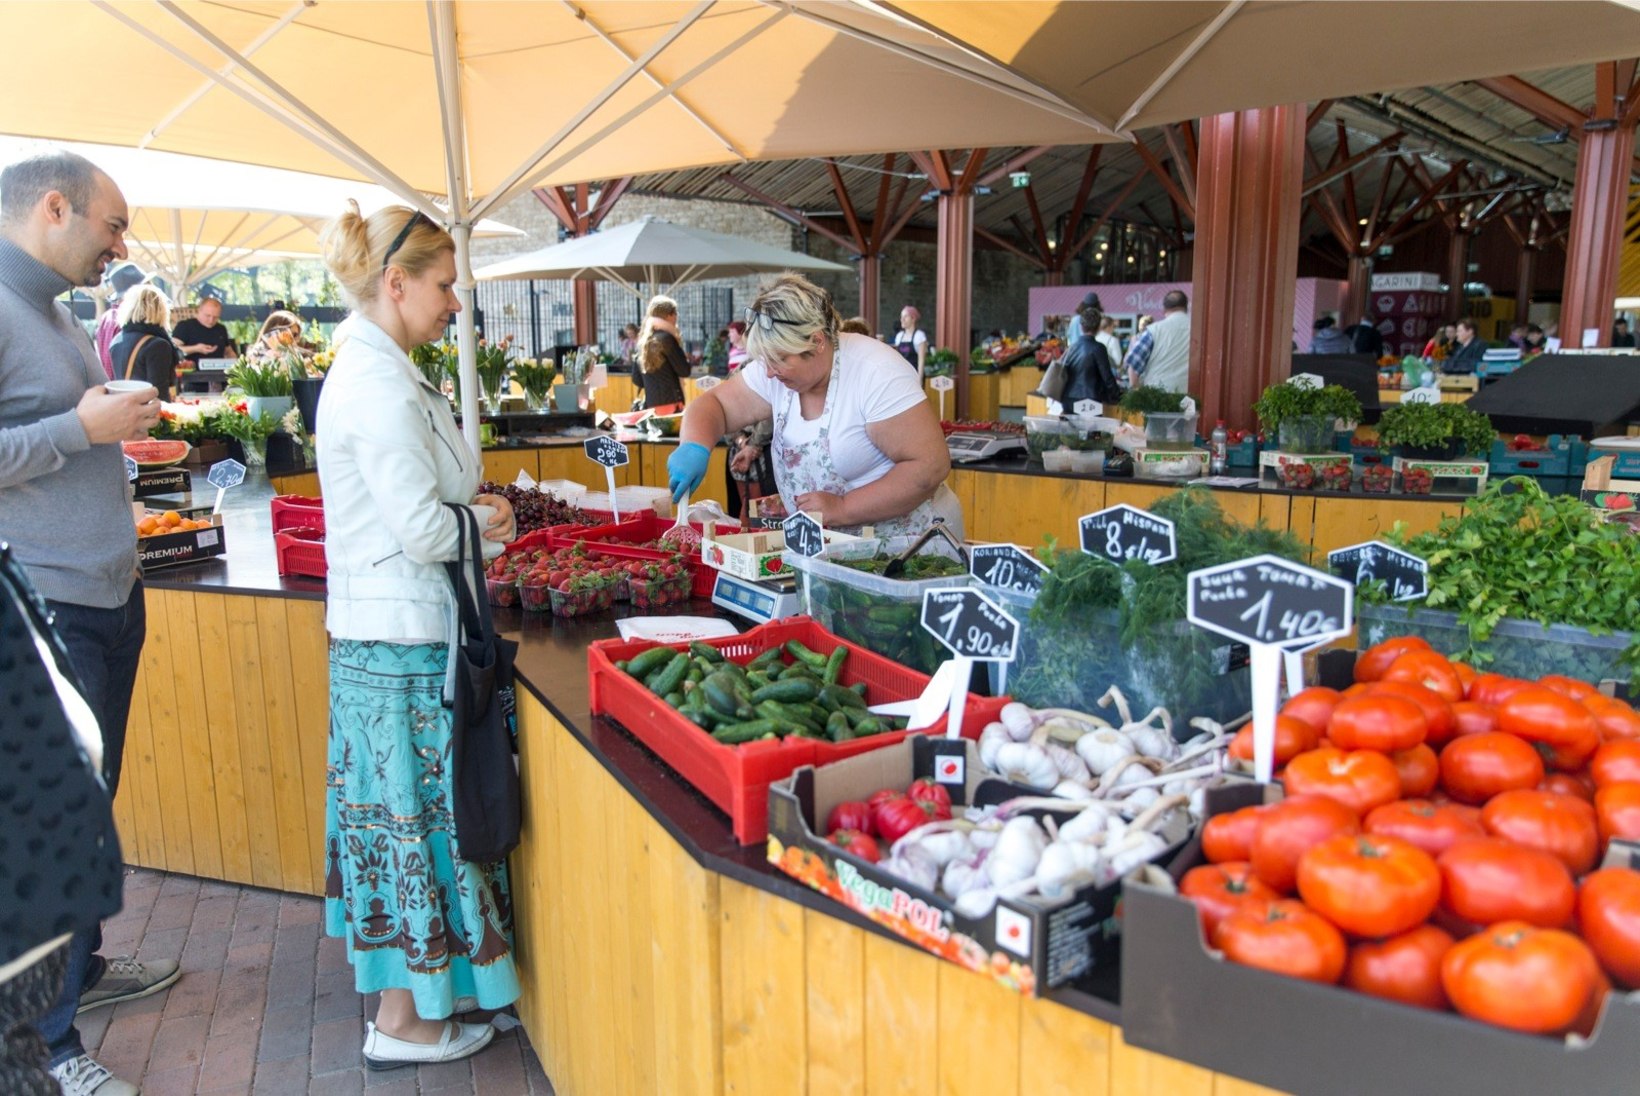 Tallinna turulisi rõõmustavad Koit Toome ja uuendused